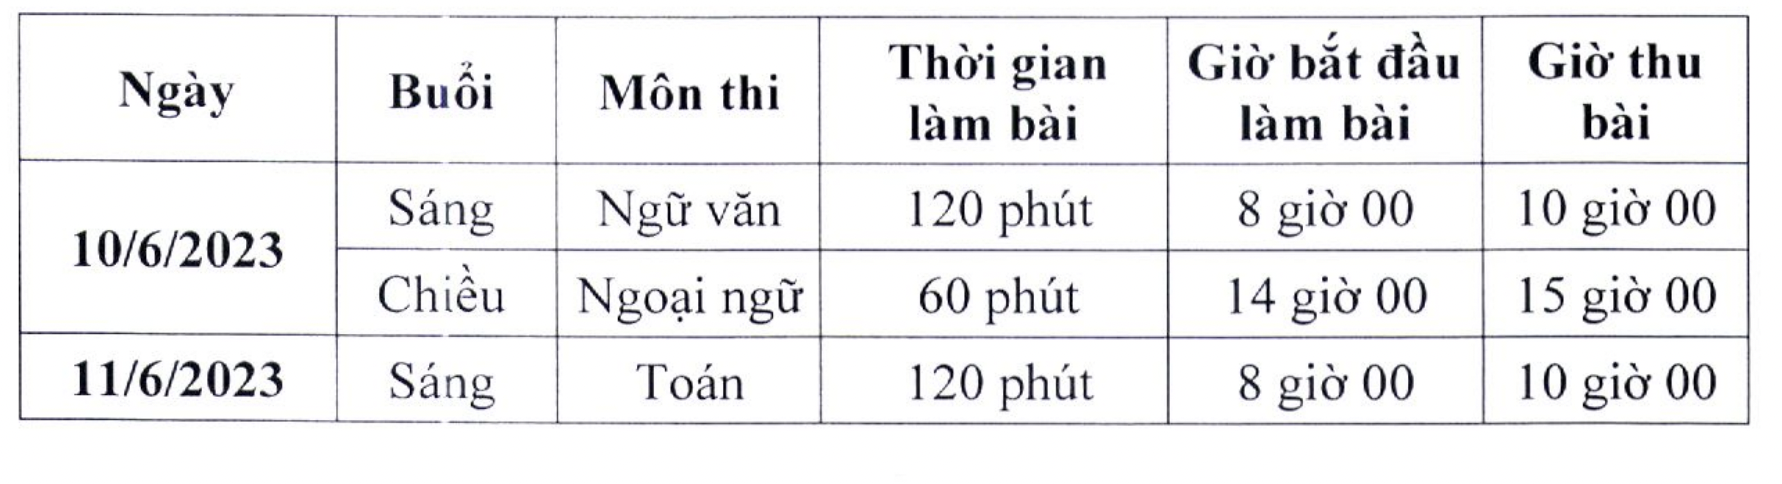 Lịch thi tuyển vào lớp 10 THPT công lập tại Hà Nội năm 2023-2024. Ảnh: Sở GDĐT Hà Nội